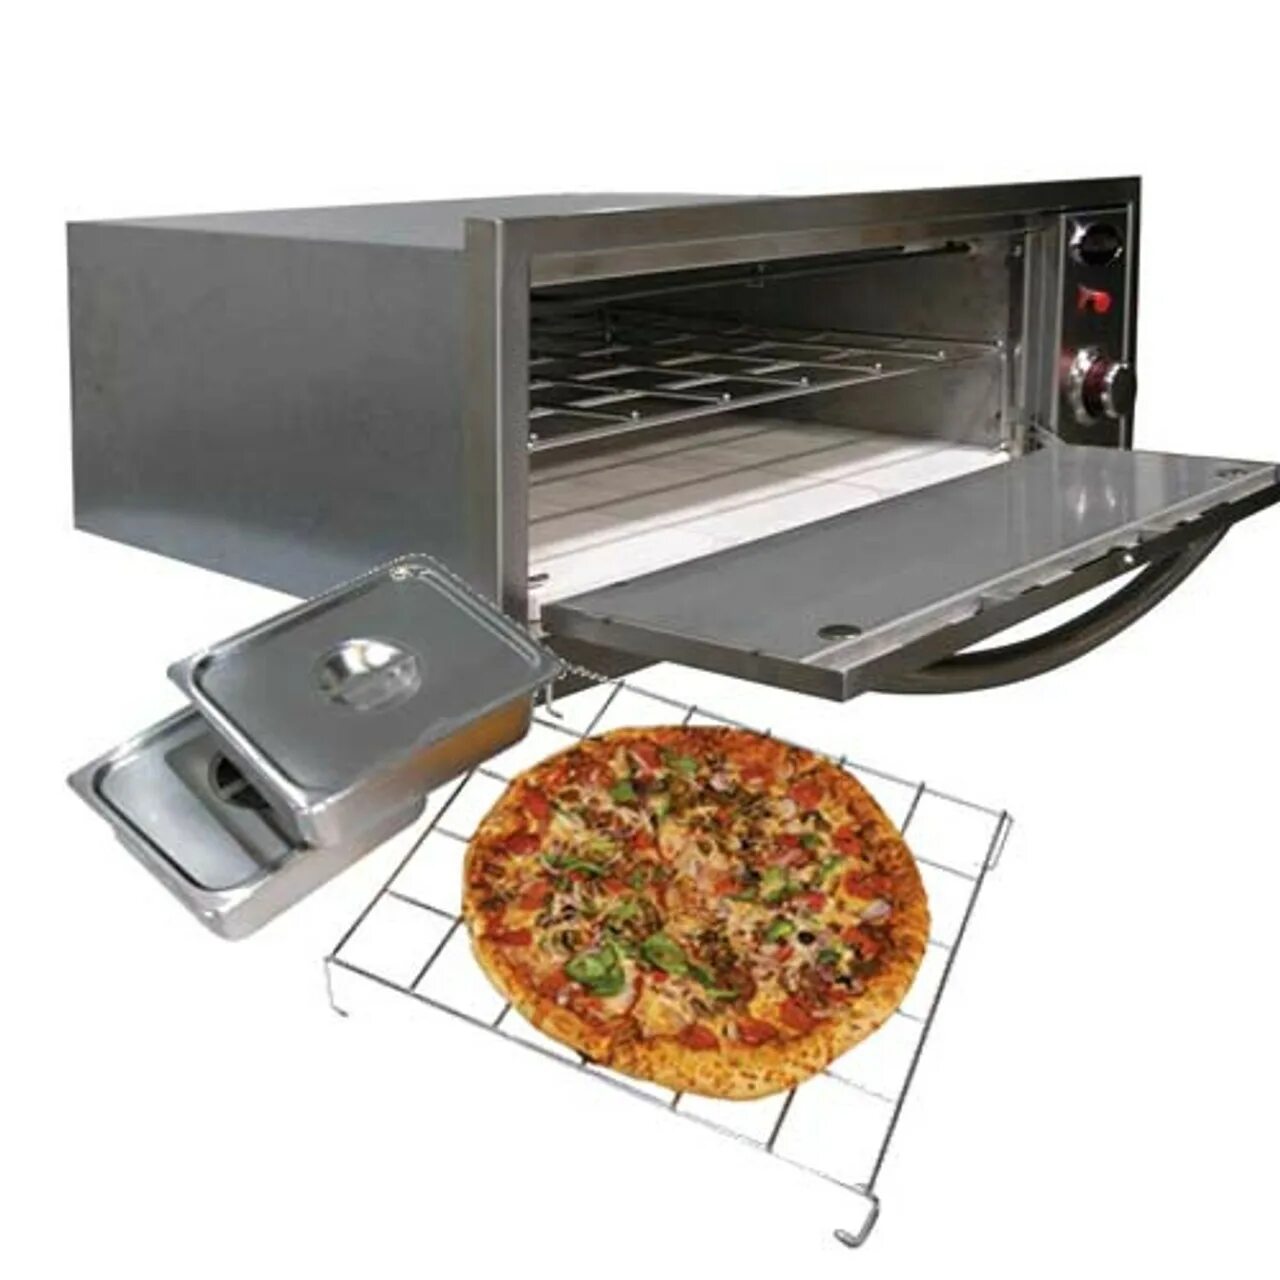 Купить духовку для пиццы. Stadler made Outdoor Oven. Amp грили mg200. Печь для пиццы электрическая. Sf1 печь.